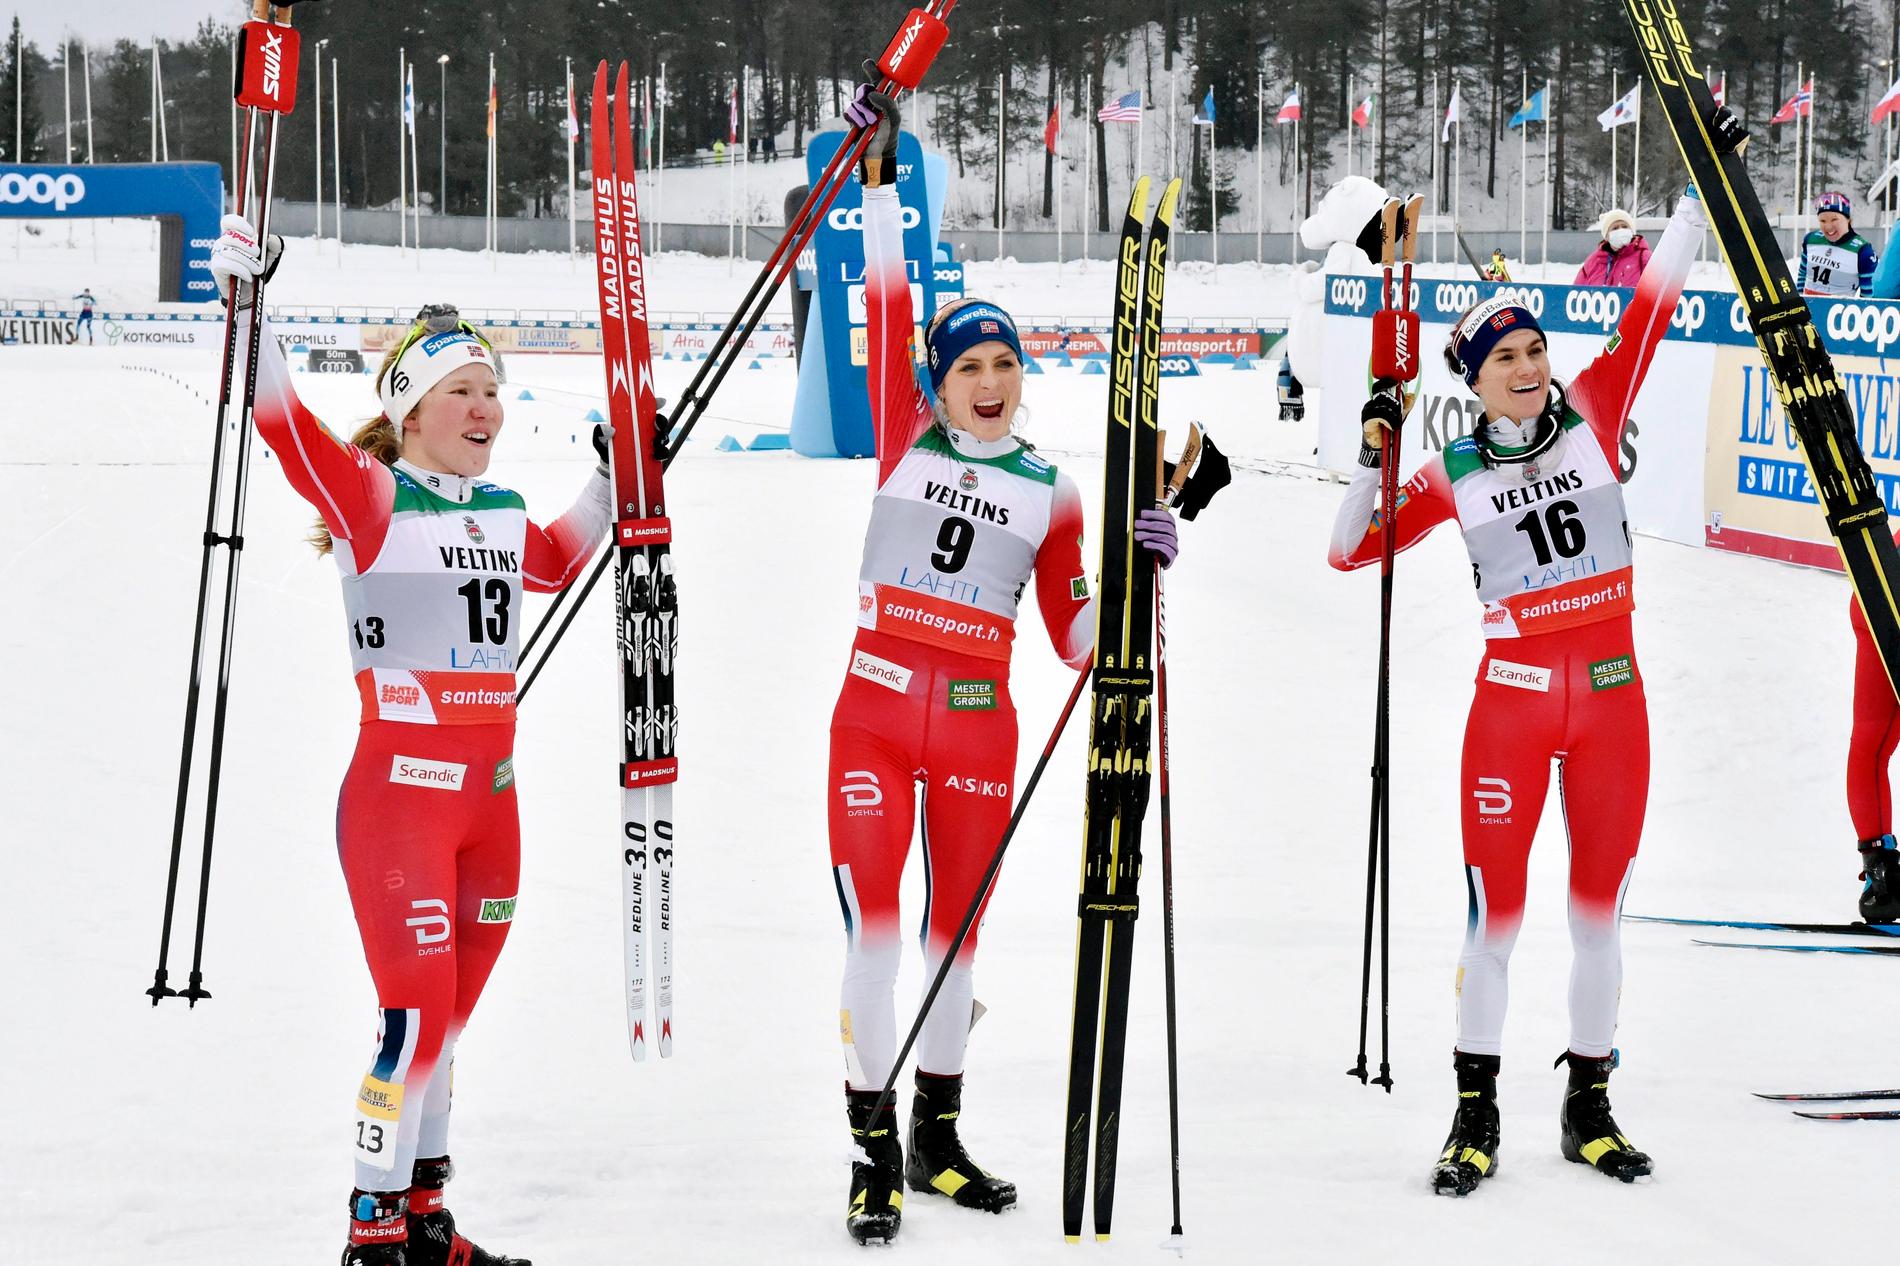 Marie Helene Fossesholm, Therese Johaug och Heidi Weng, som tog pallplatserna i Lahtis på lördagen, får komma till Falun och tävla i nästa vecka, trots reseförbud från Norge.